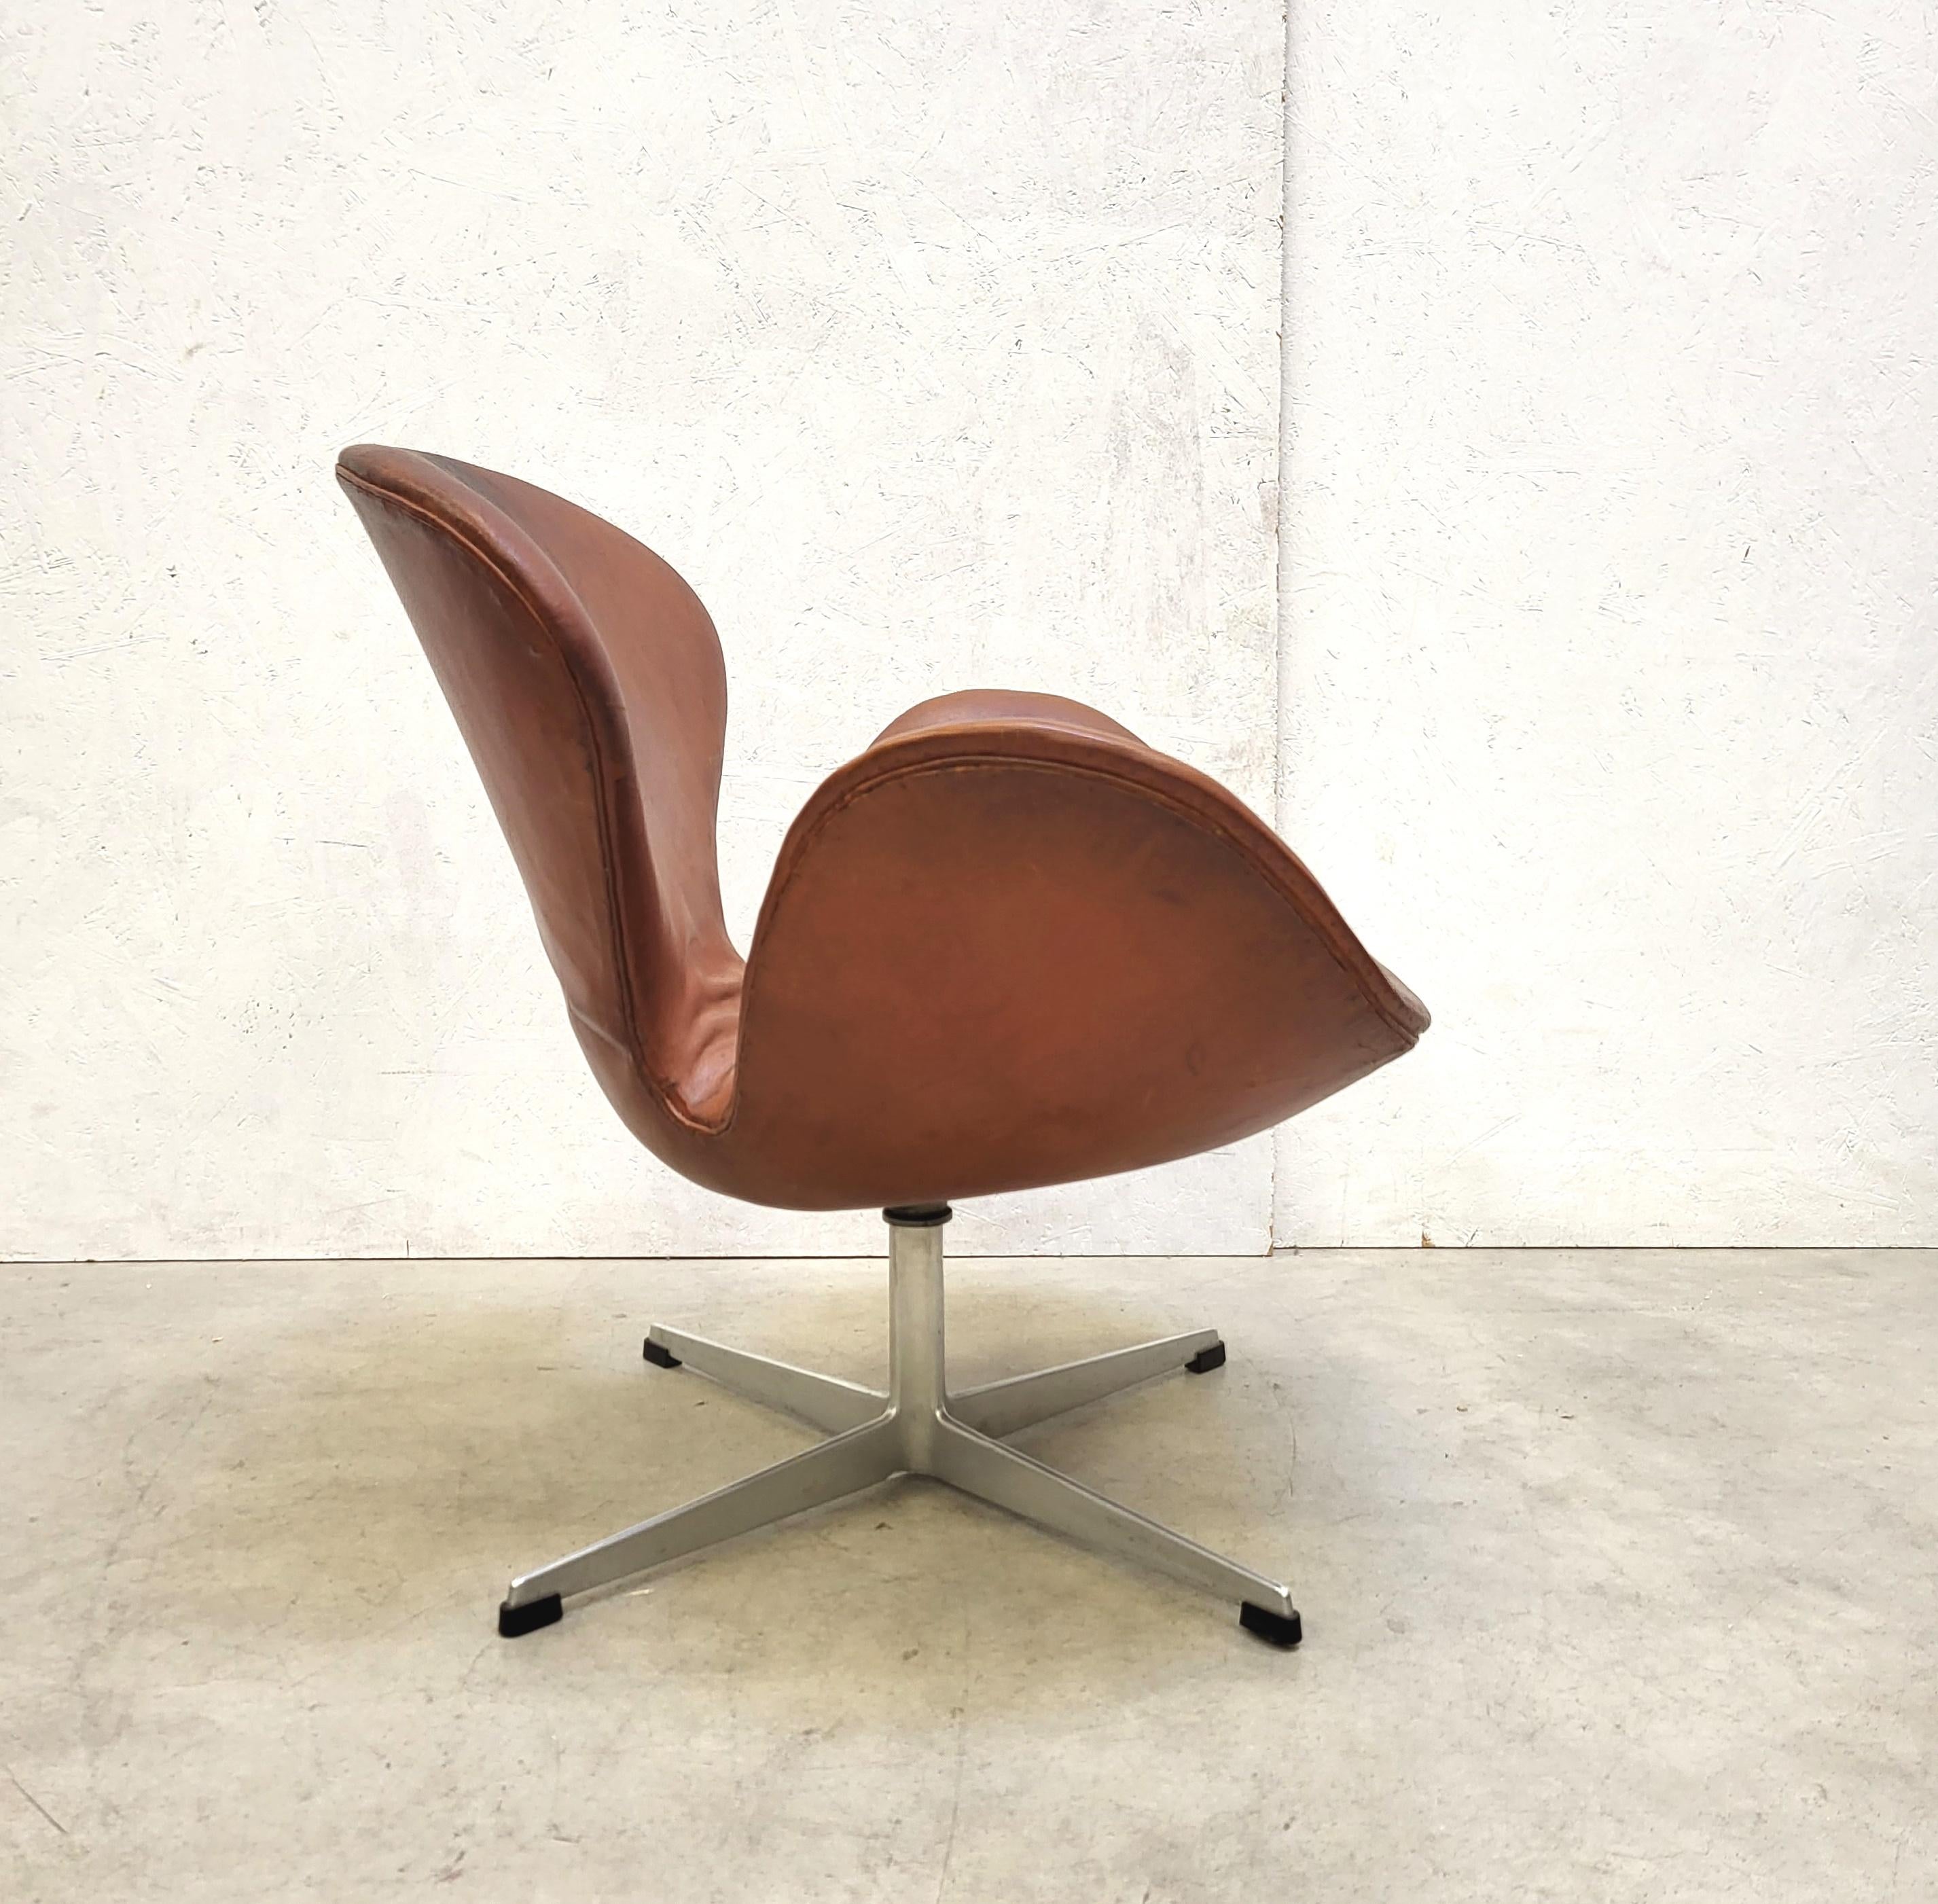 Cette chaise Swan, très rare et de première édition, a été conçue dans les années 1950 par Arne Jacobsen pour l'hôtel SAS de Copenhague et produite par Fritz Hansen vers 1958/1959. 

La chaise est recouverte d'un magnifique cuir cognac qui